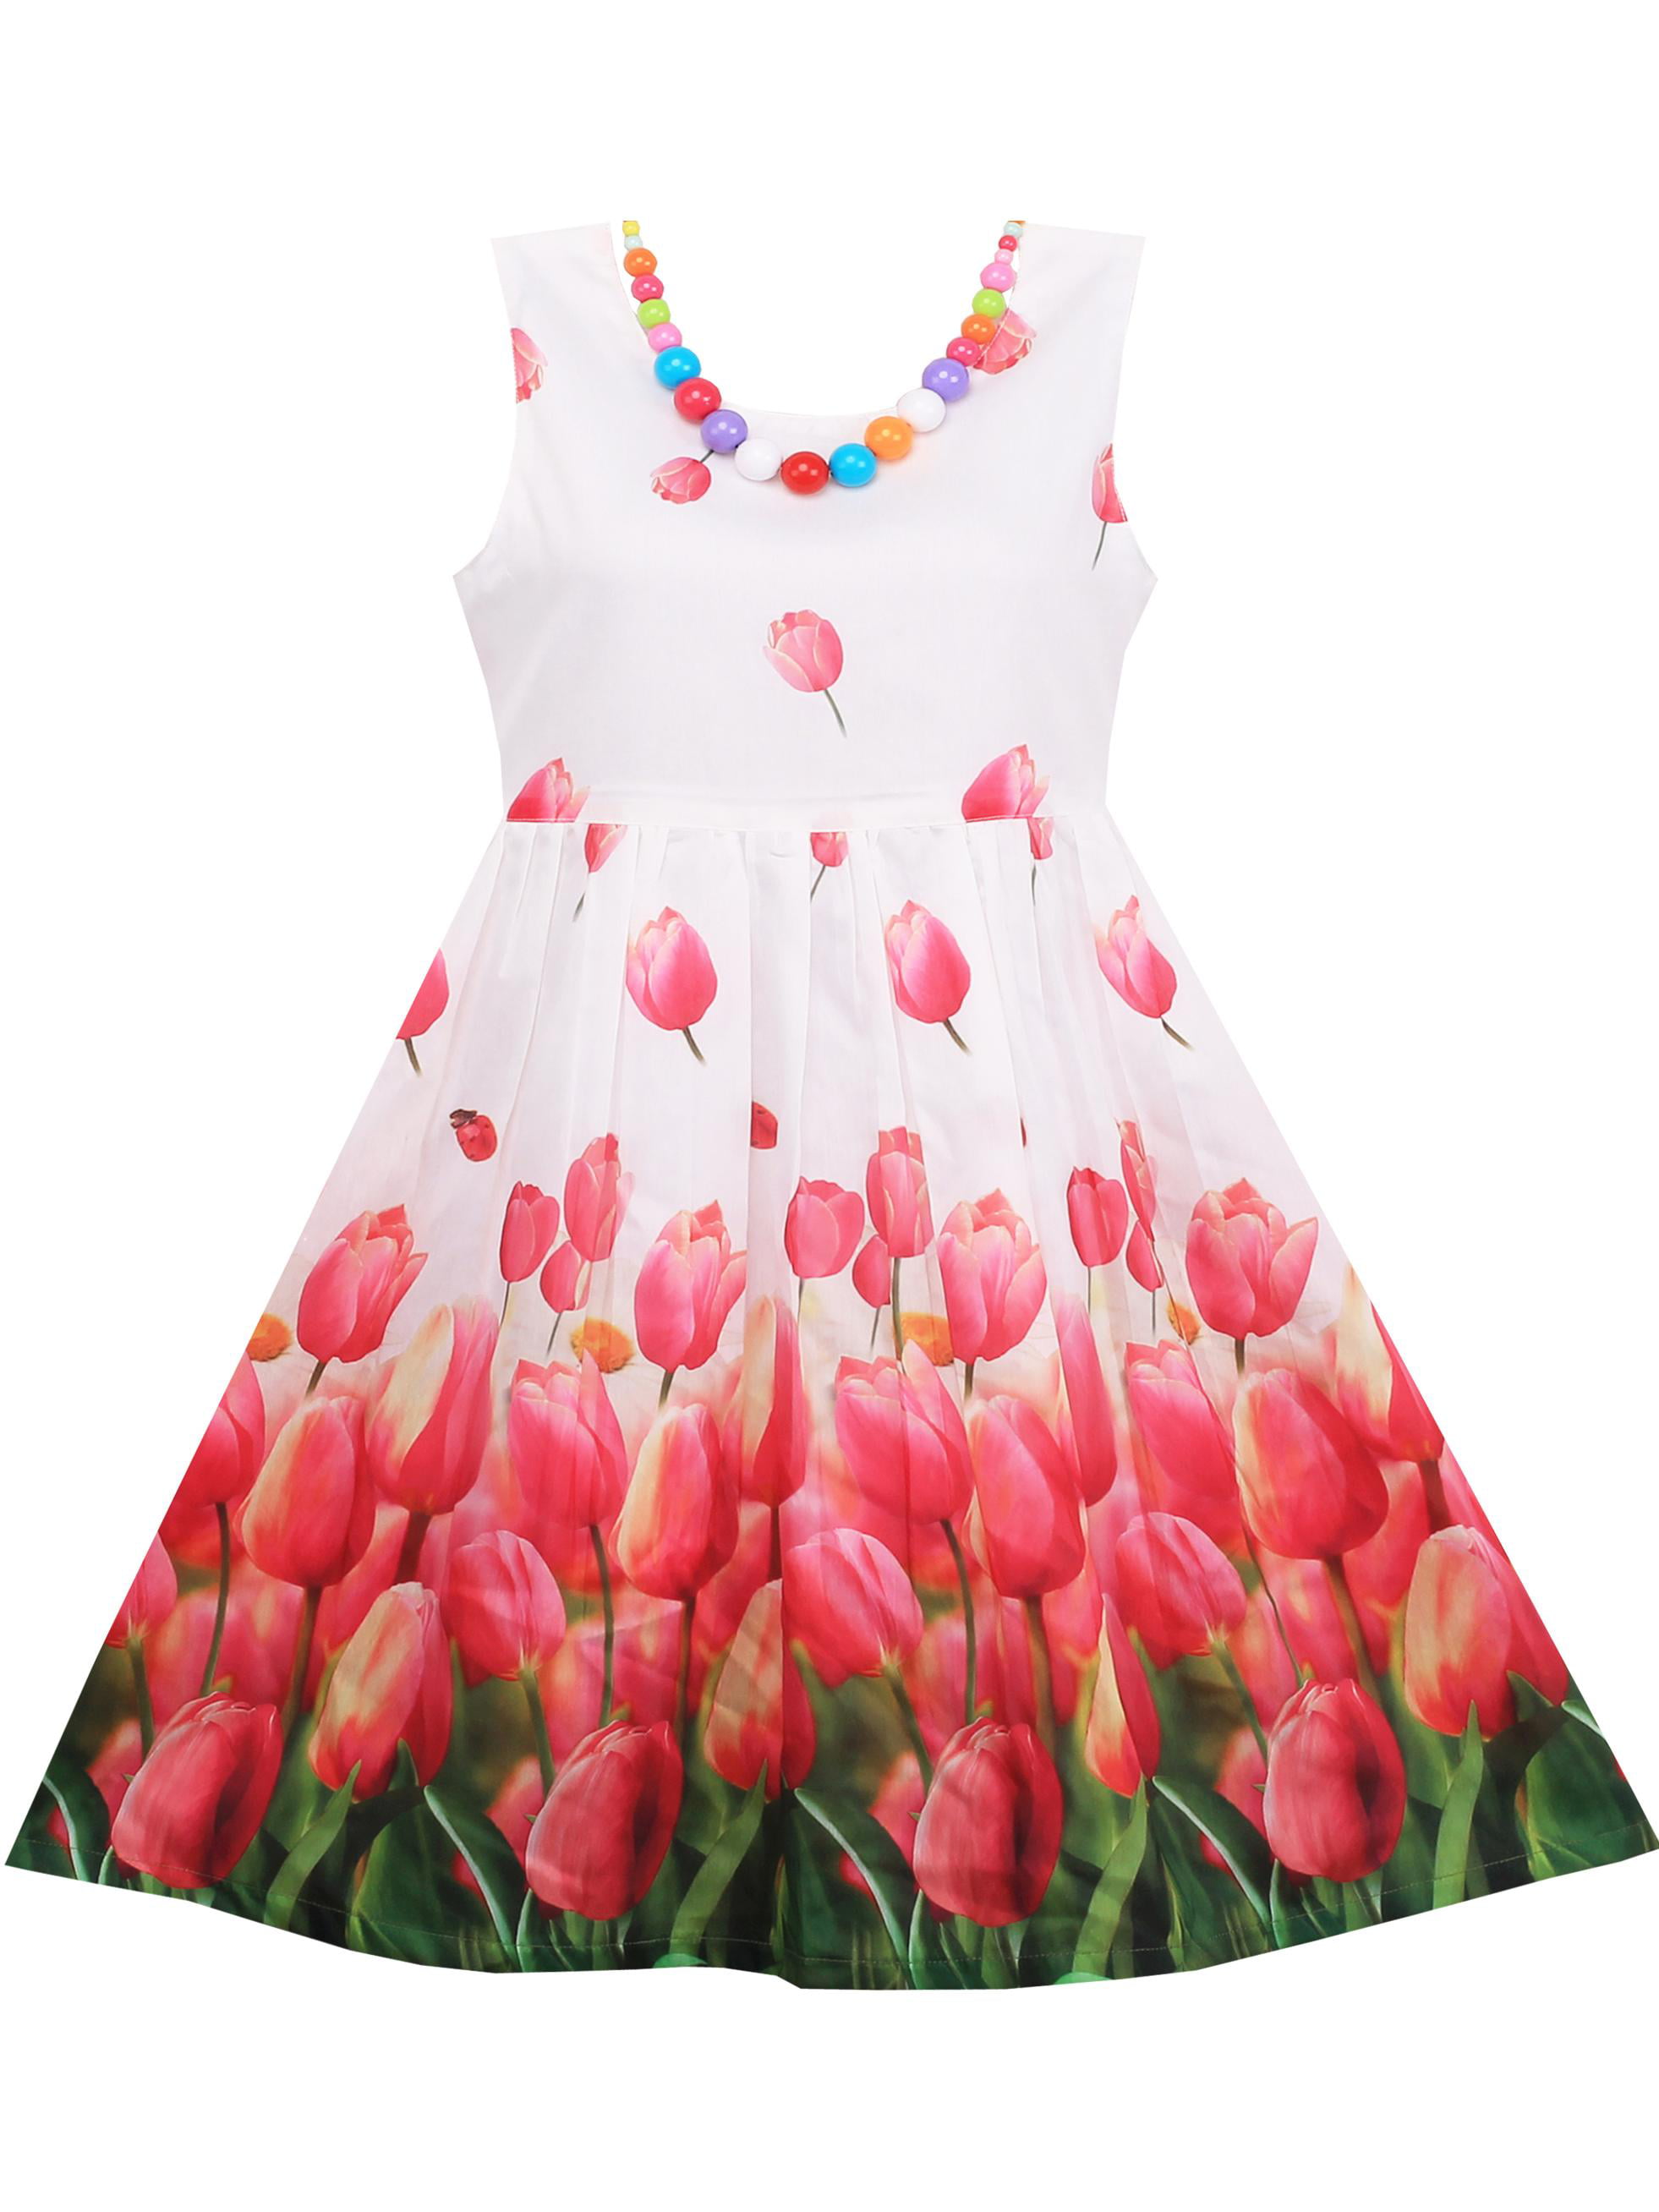 Girls Dress Tulip Flower Garden With ...